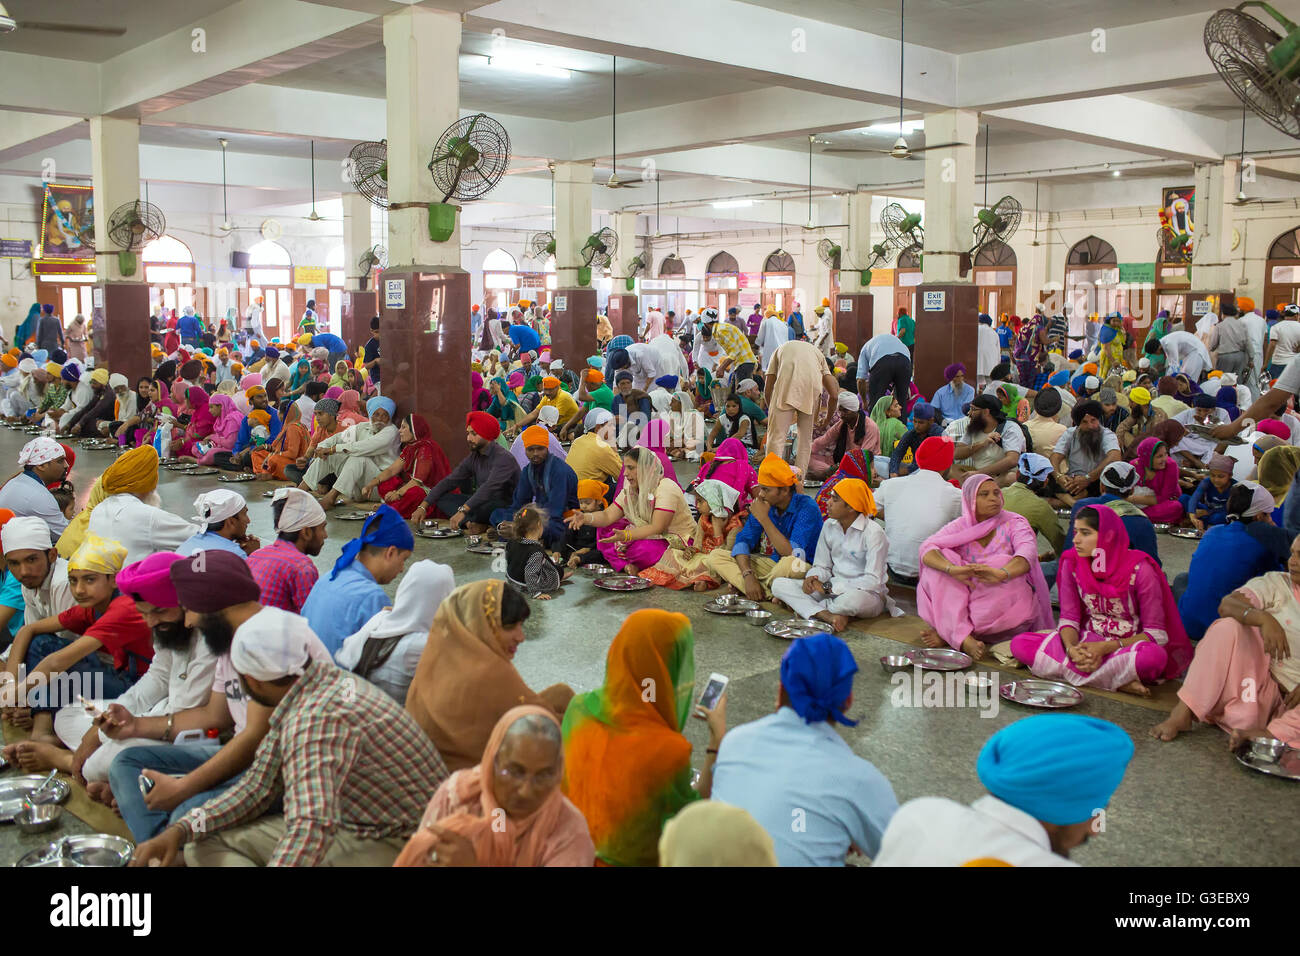 Les Indiens non identifiés de manger de la nourriture gratuite dans les locaux du temple de Temple d'or sikh à Amritsar, Inde Banque D'Images